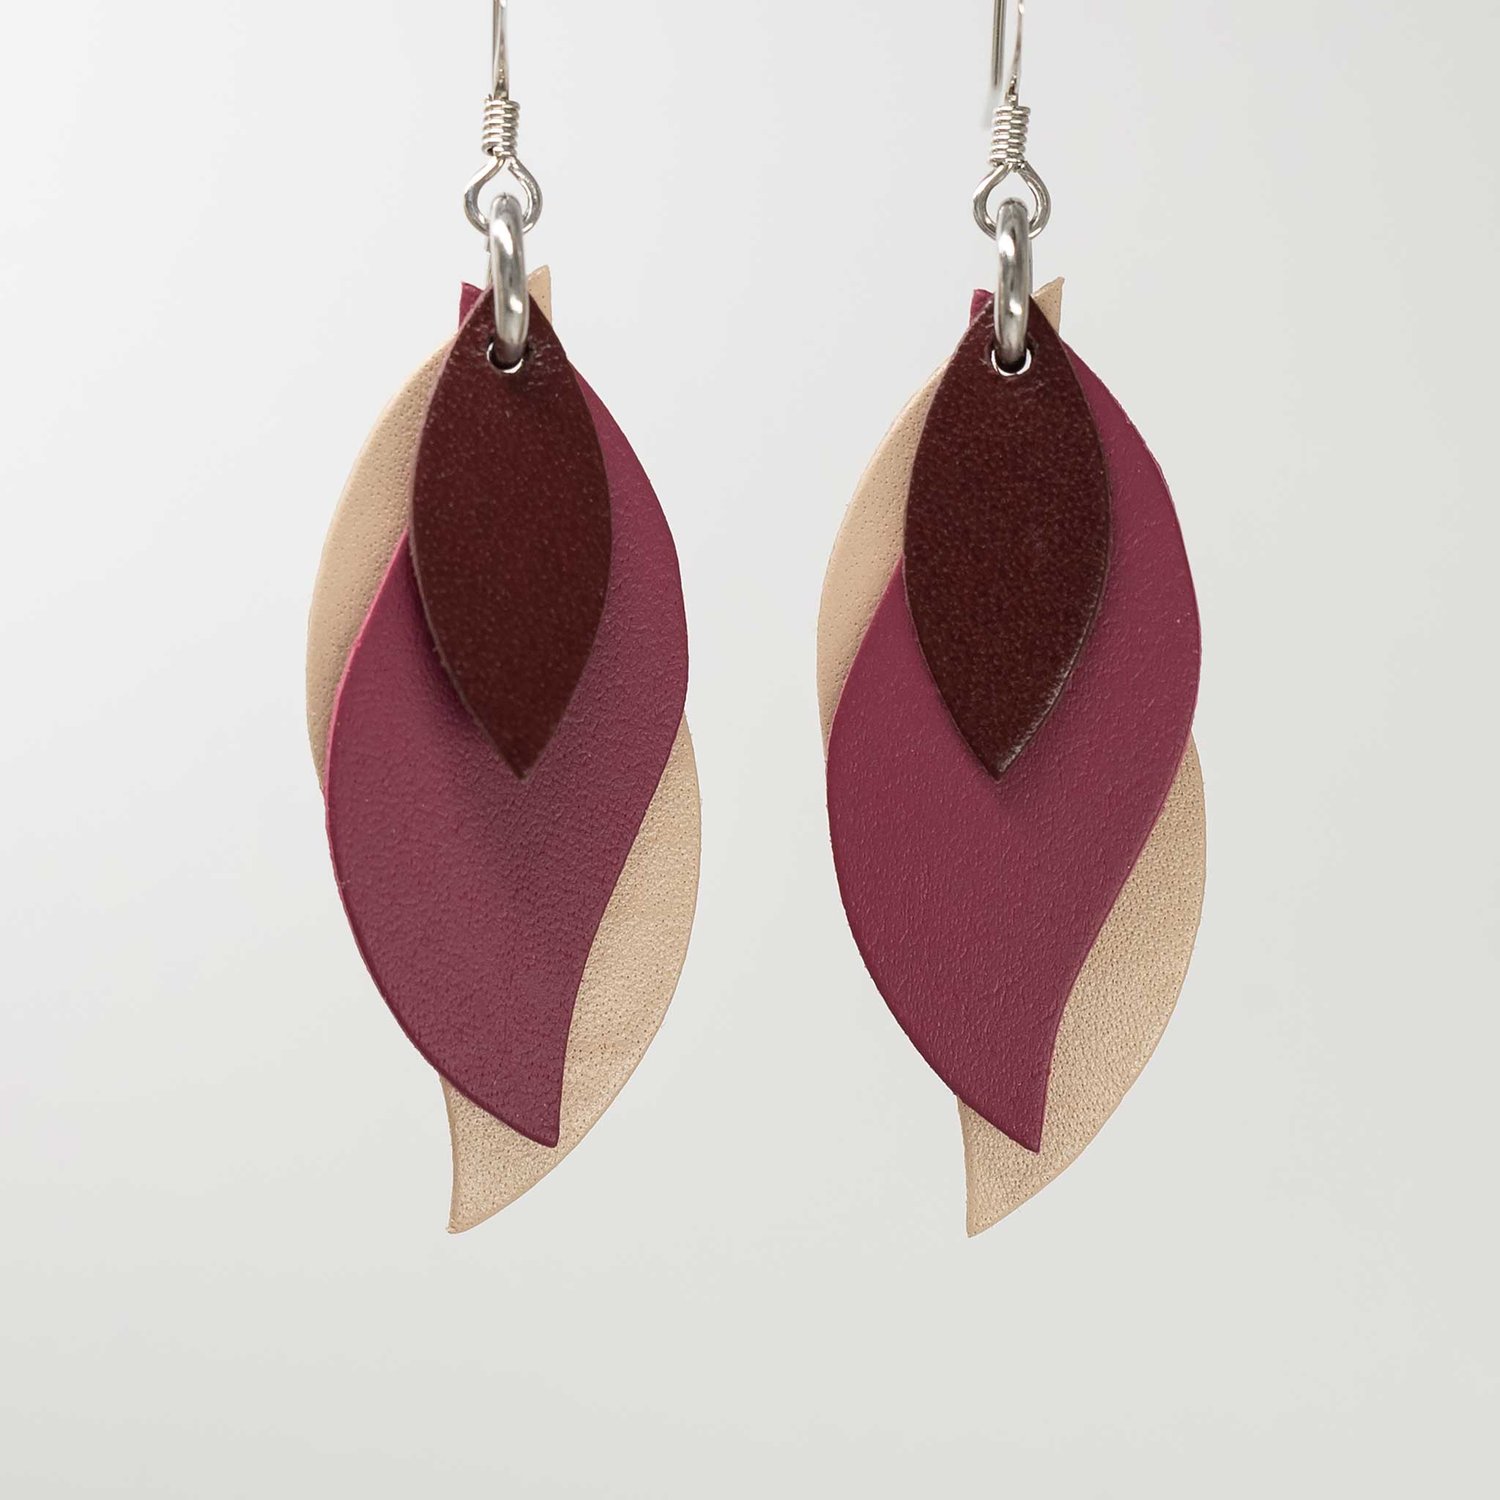 Image of Australian leather leaf earrings - Burgundy, plum pink, beige [LPP-421]